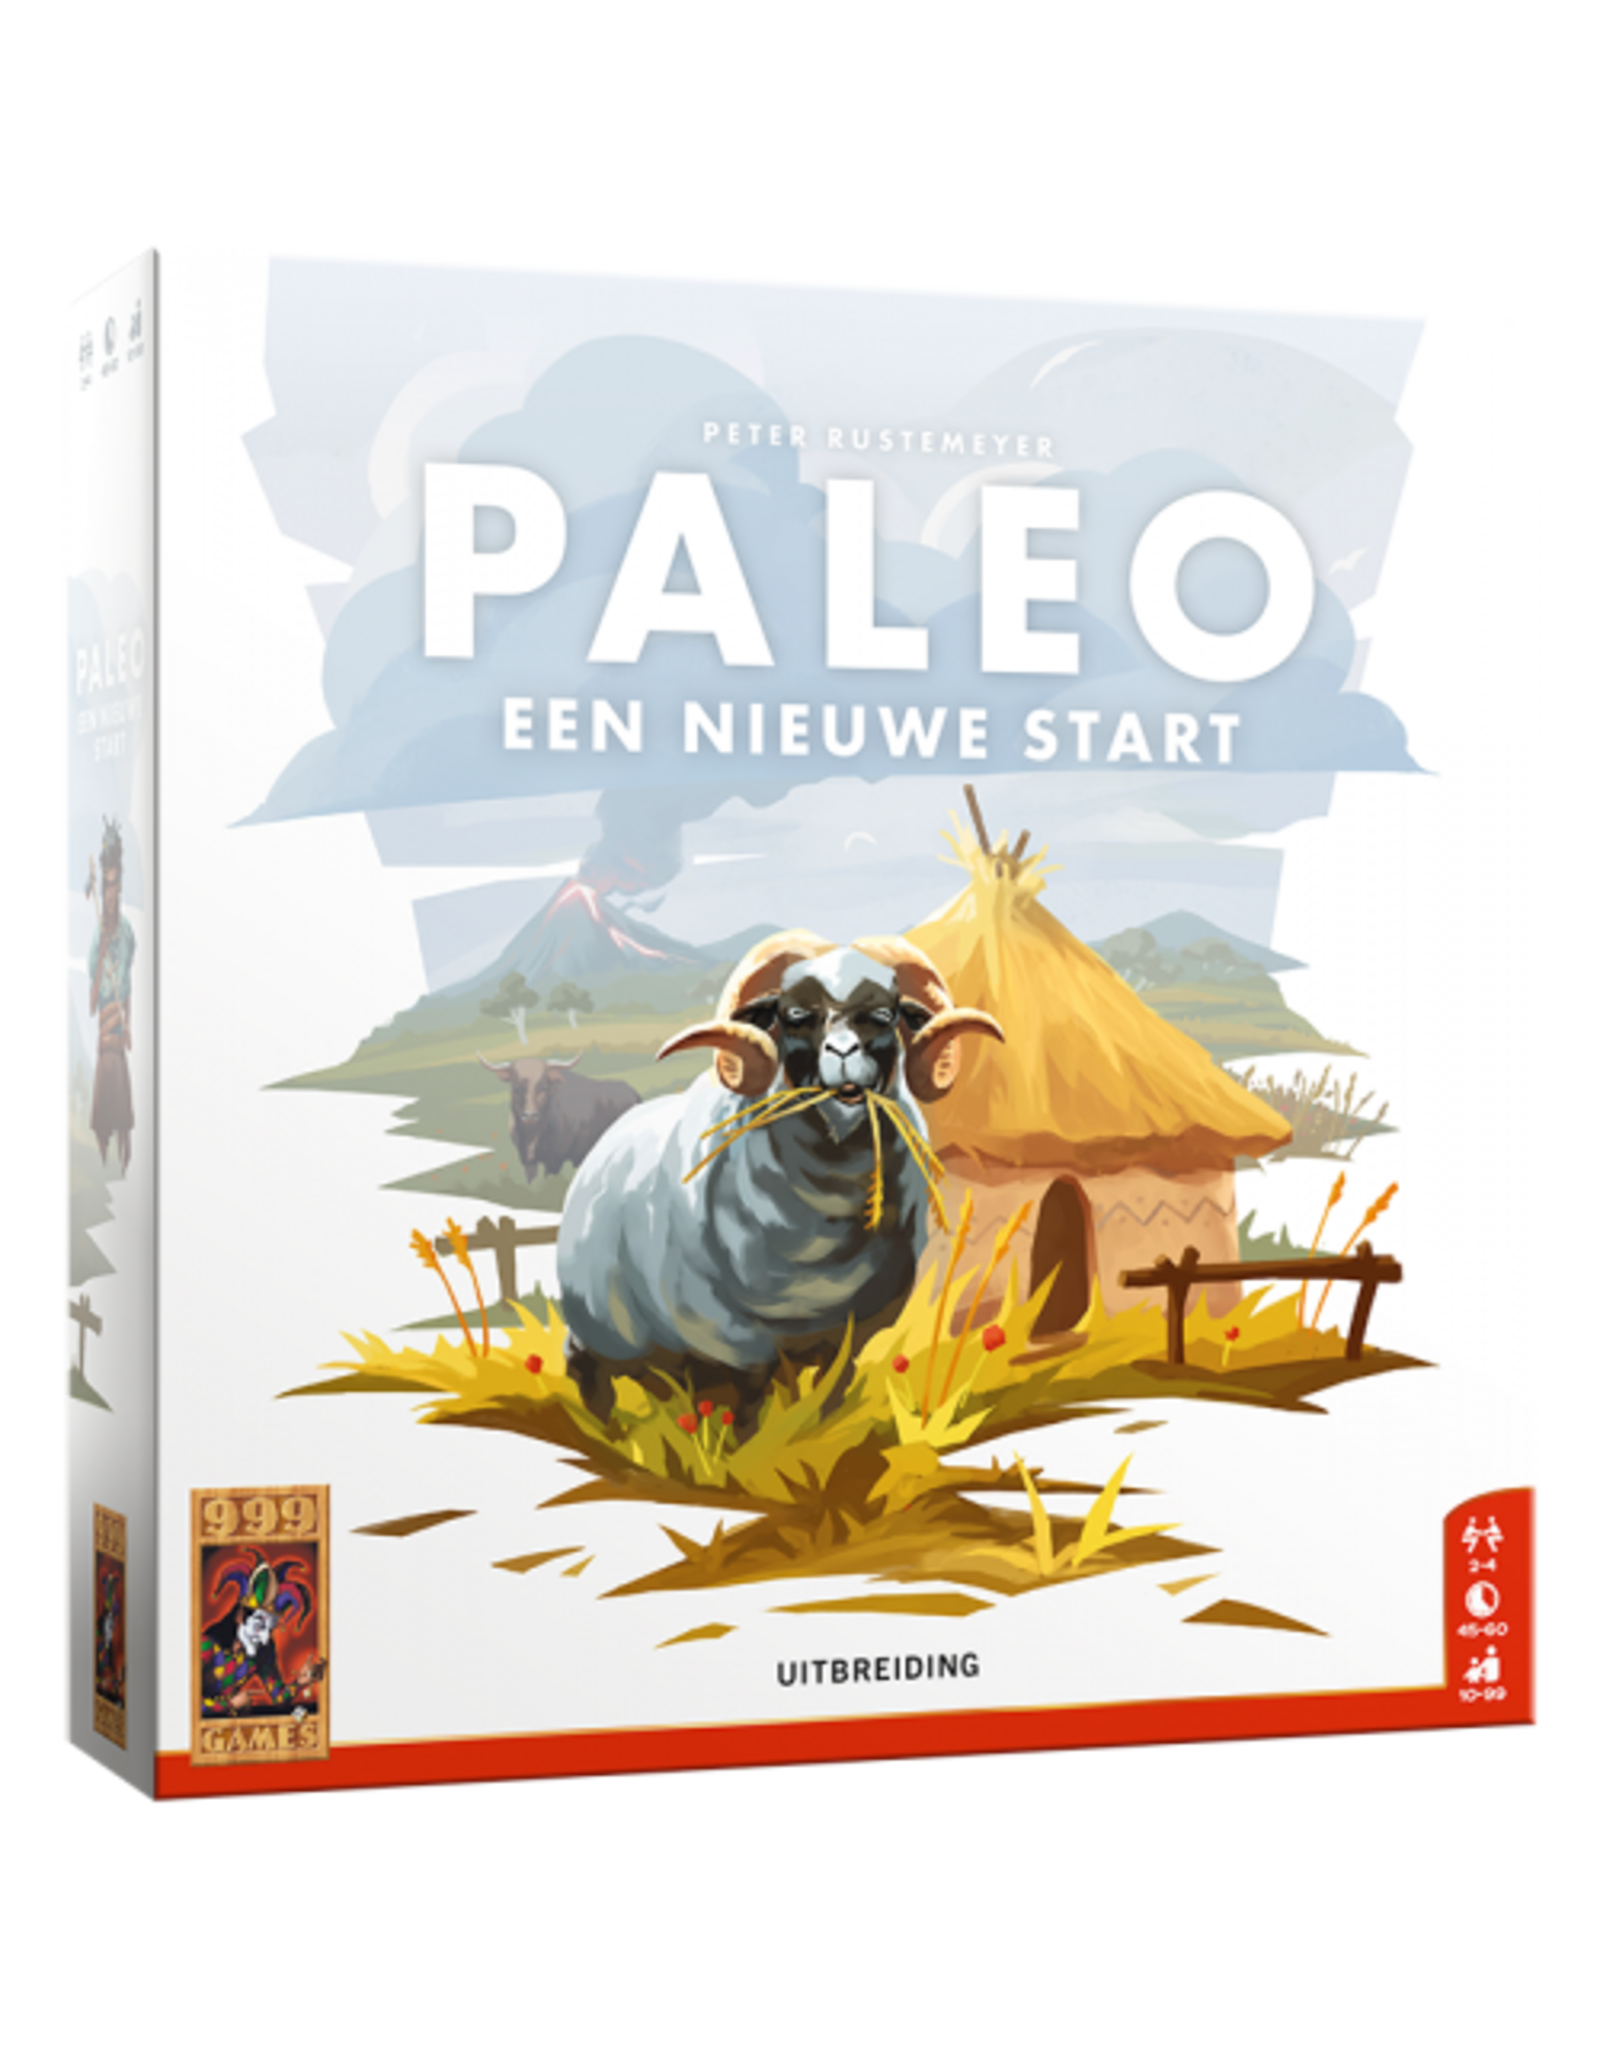 999 GAMES Paleo een nieuwe start  uitbreiding set